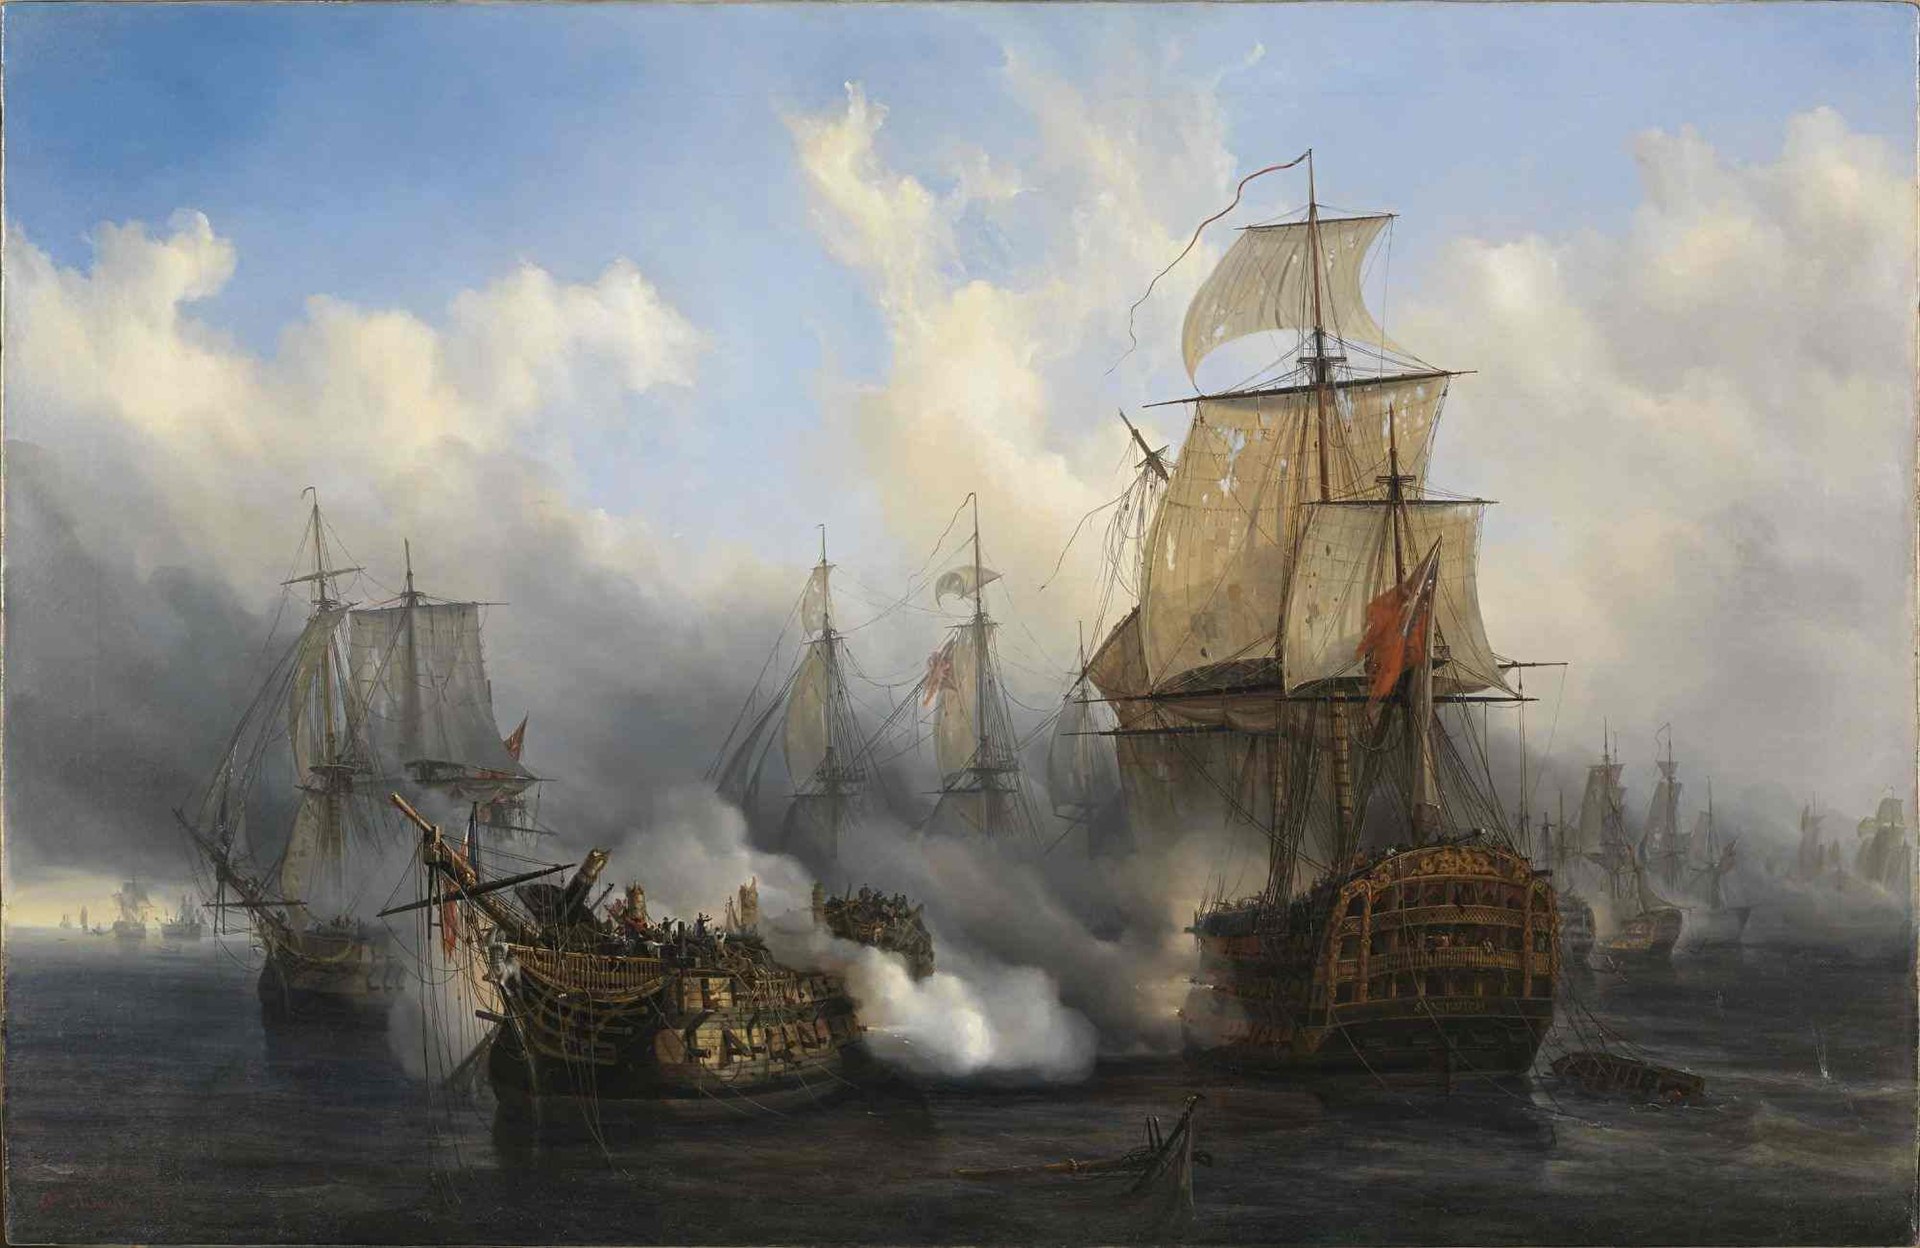 Bucentaure suffering enemy fire from HMS Sandwich in Trafalgar. Oil by Auguste Mayer from 1836.